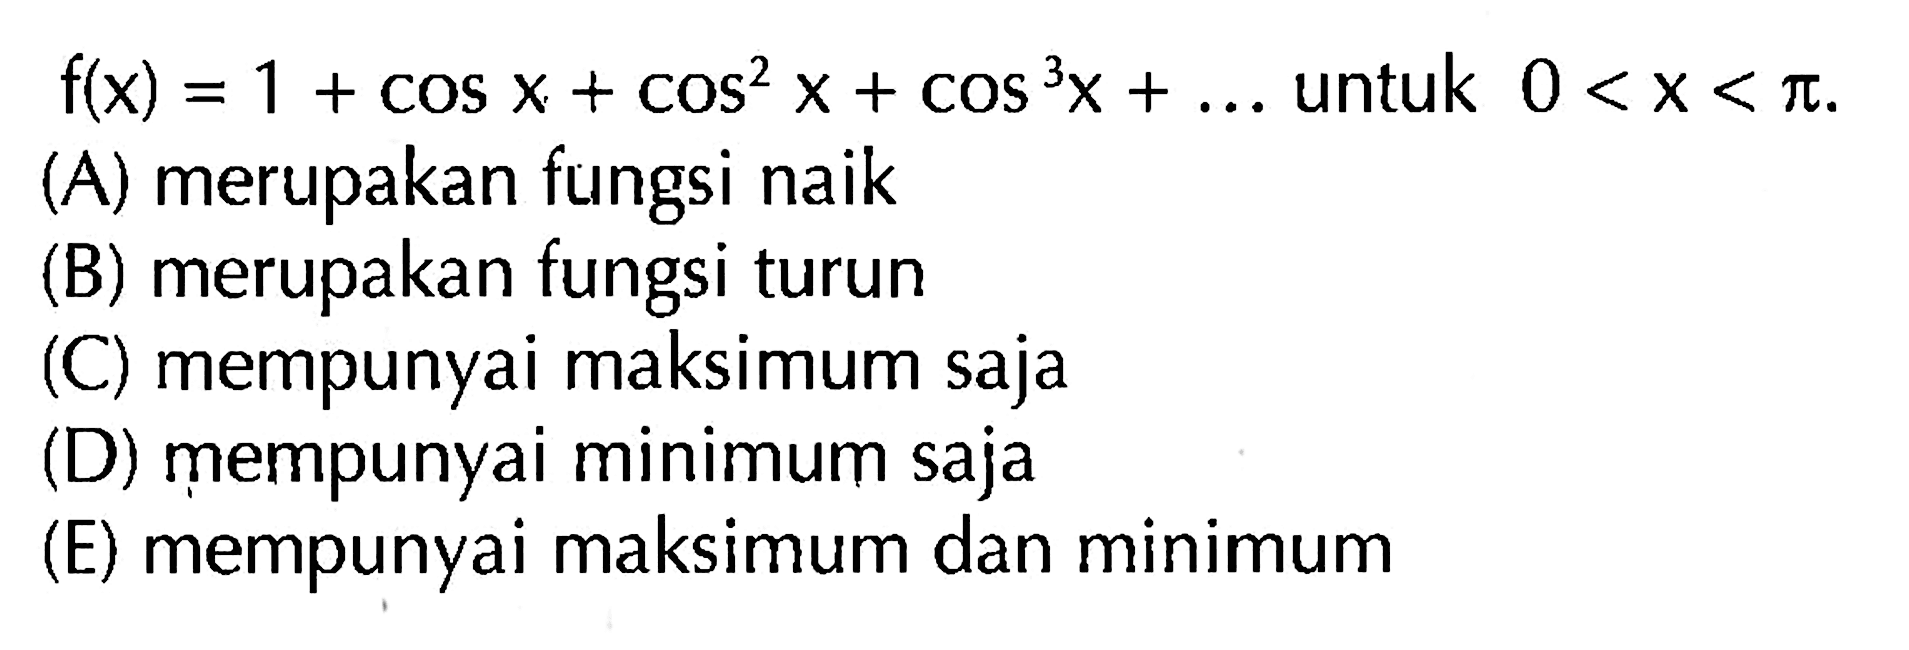 f(x)=1+cos x+cos^2 x+cos^3 x+... untuk 0<x<pi.